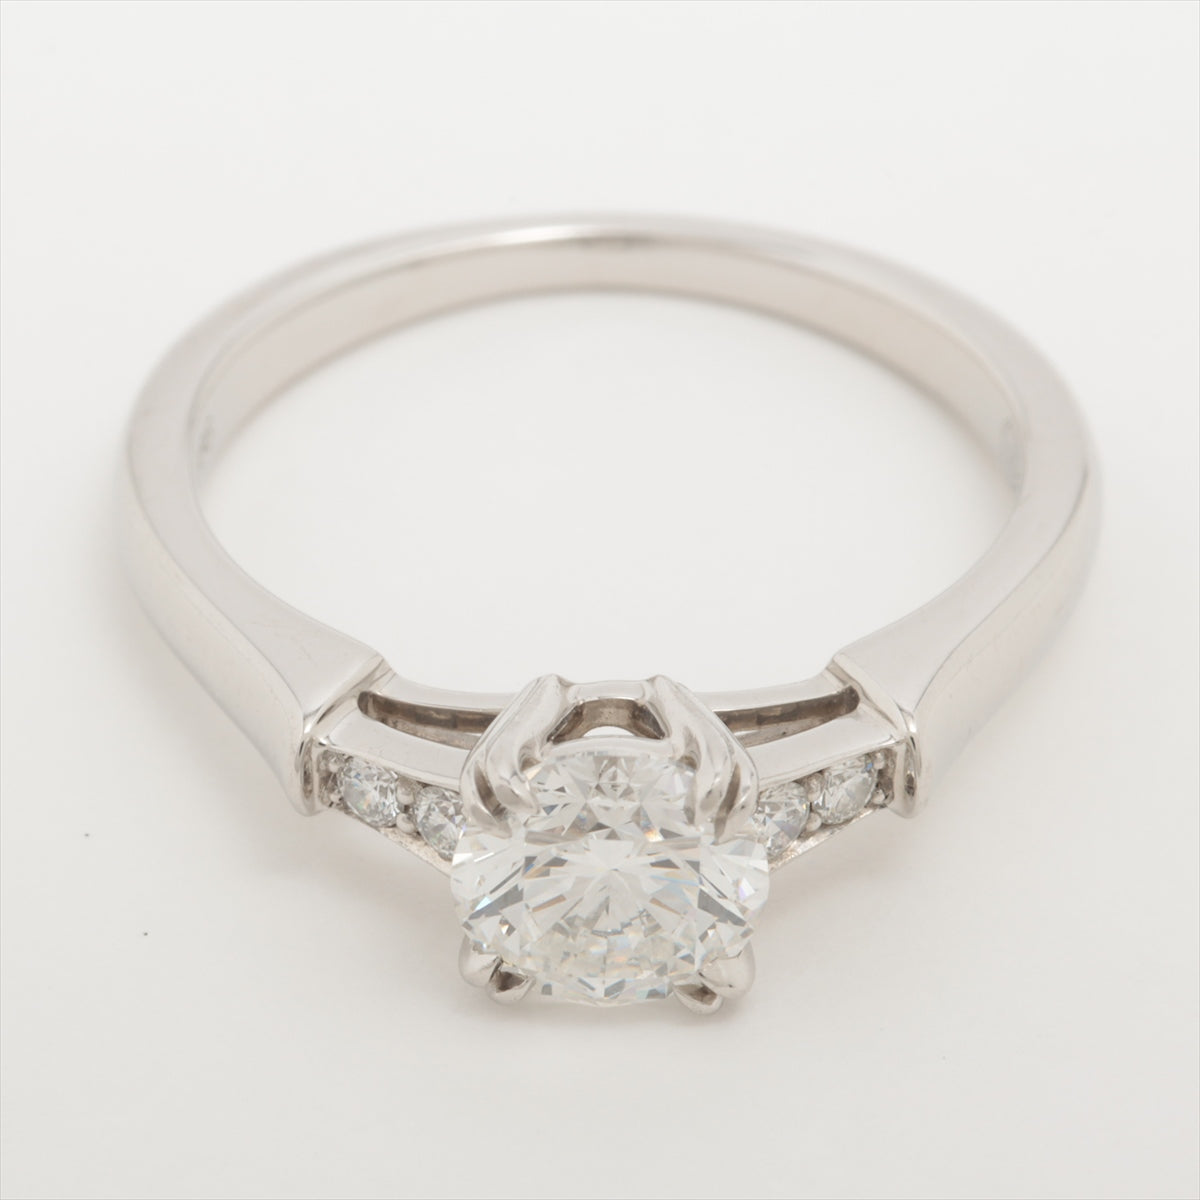 Harry Winston Trist Diamond Ring Pt950 4.0g GIA None. 3225066694